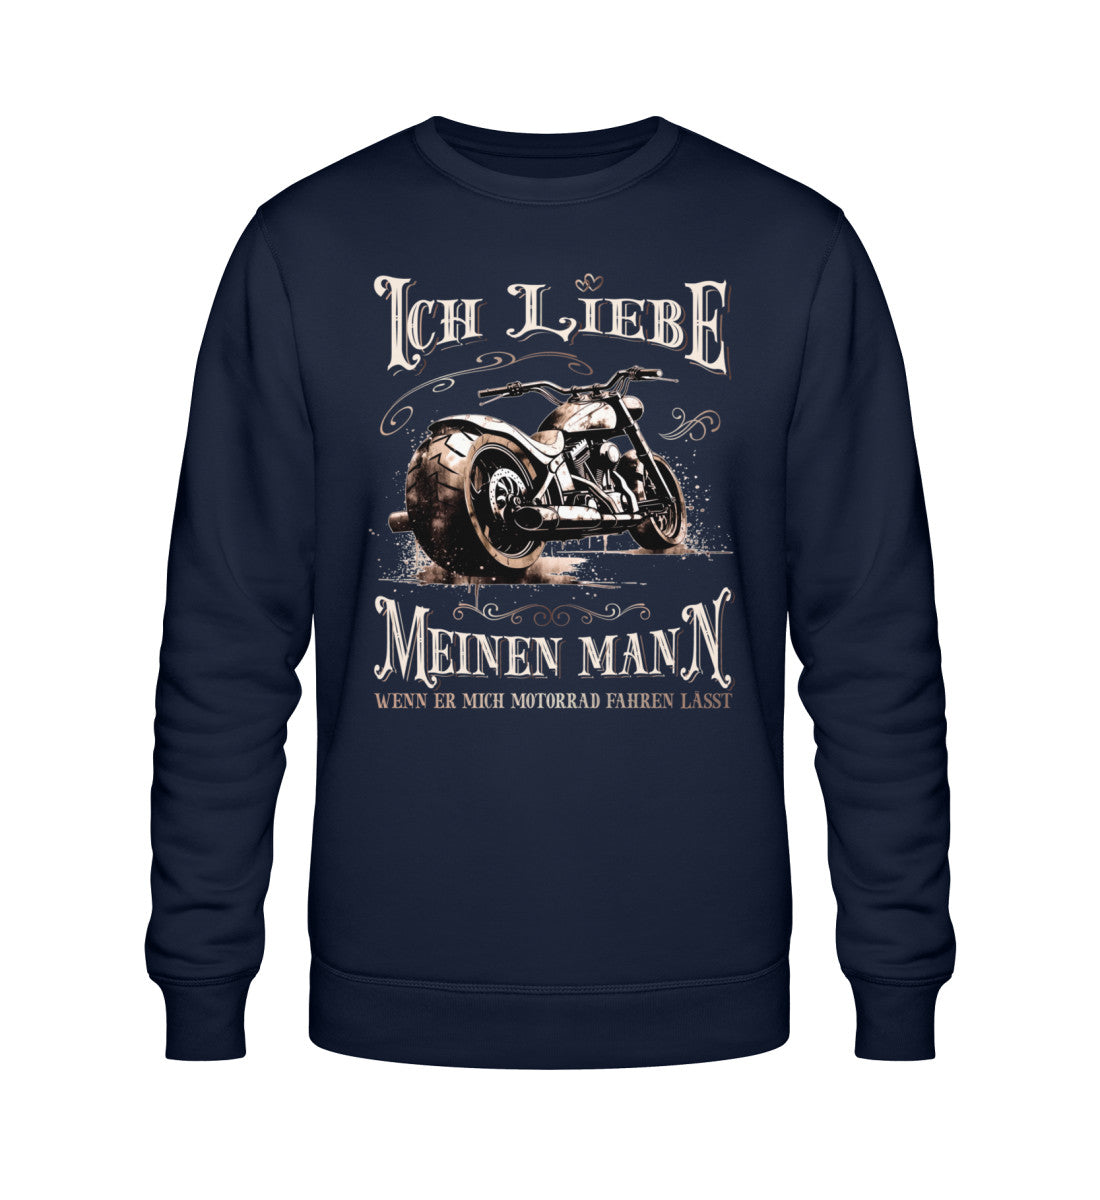 Ein Sweatshirt für Motorradfahrerinnen von Wingbikers mit dem Aufdruck, Ich liebe meinen Mann, wenn er mich Motorrad fahren lässt! - in navy blau.